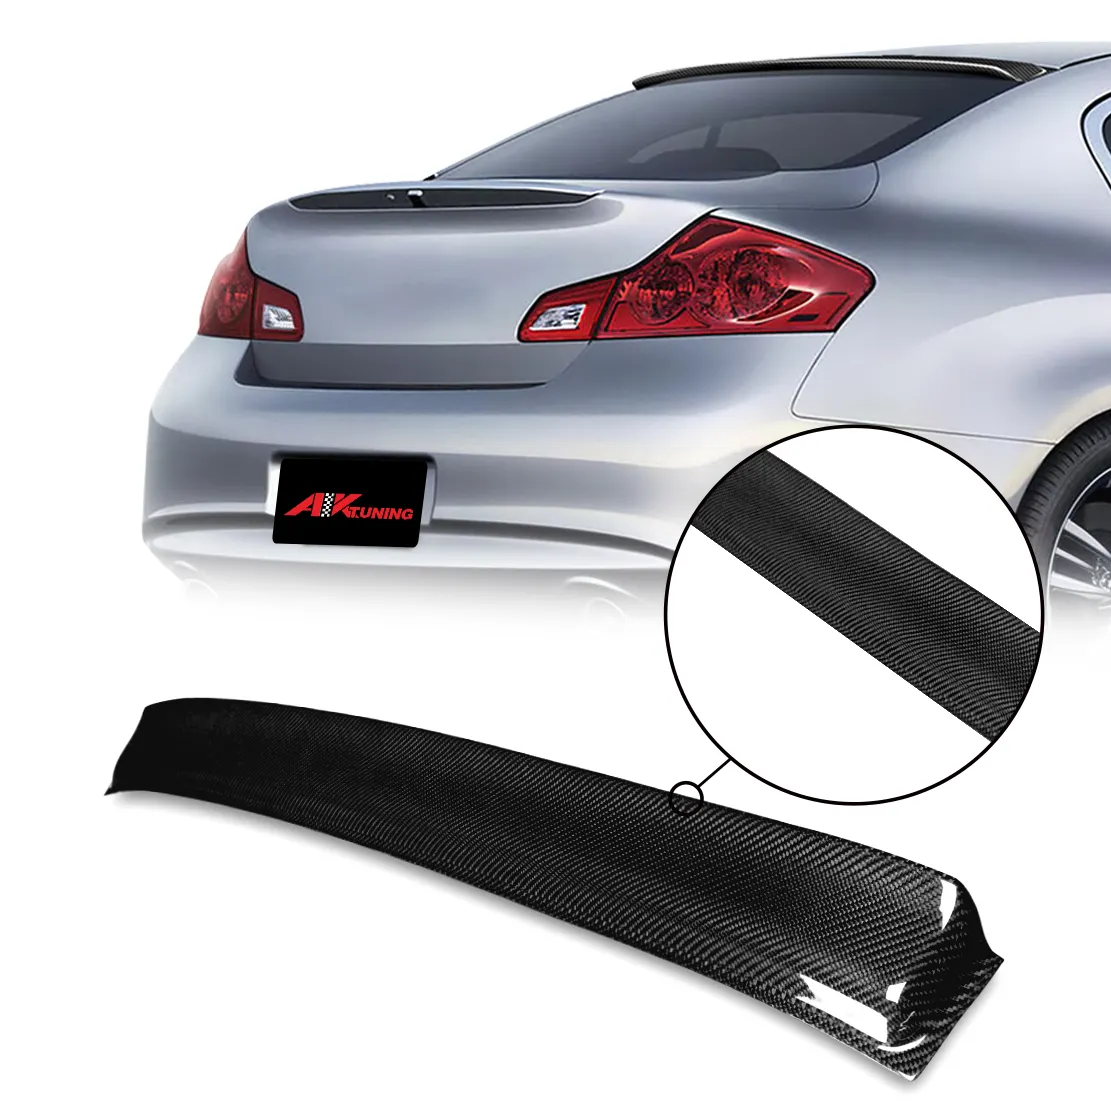 Voor 2010 Infiniti G37 Coupe Sedan Carbon Fiber Black Accessoires Onderdelen Body Kit Voorbumper Raam Spoiler Diffuser Lip